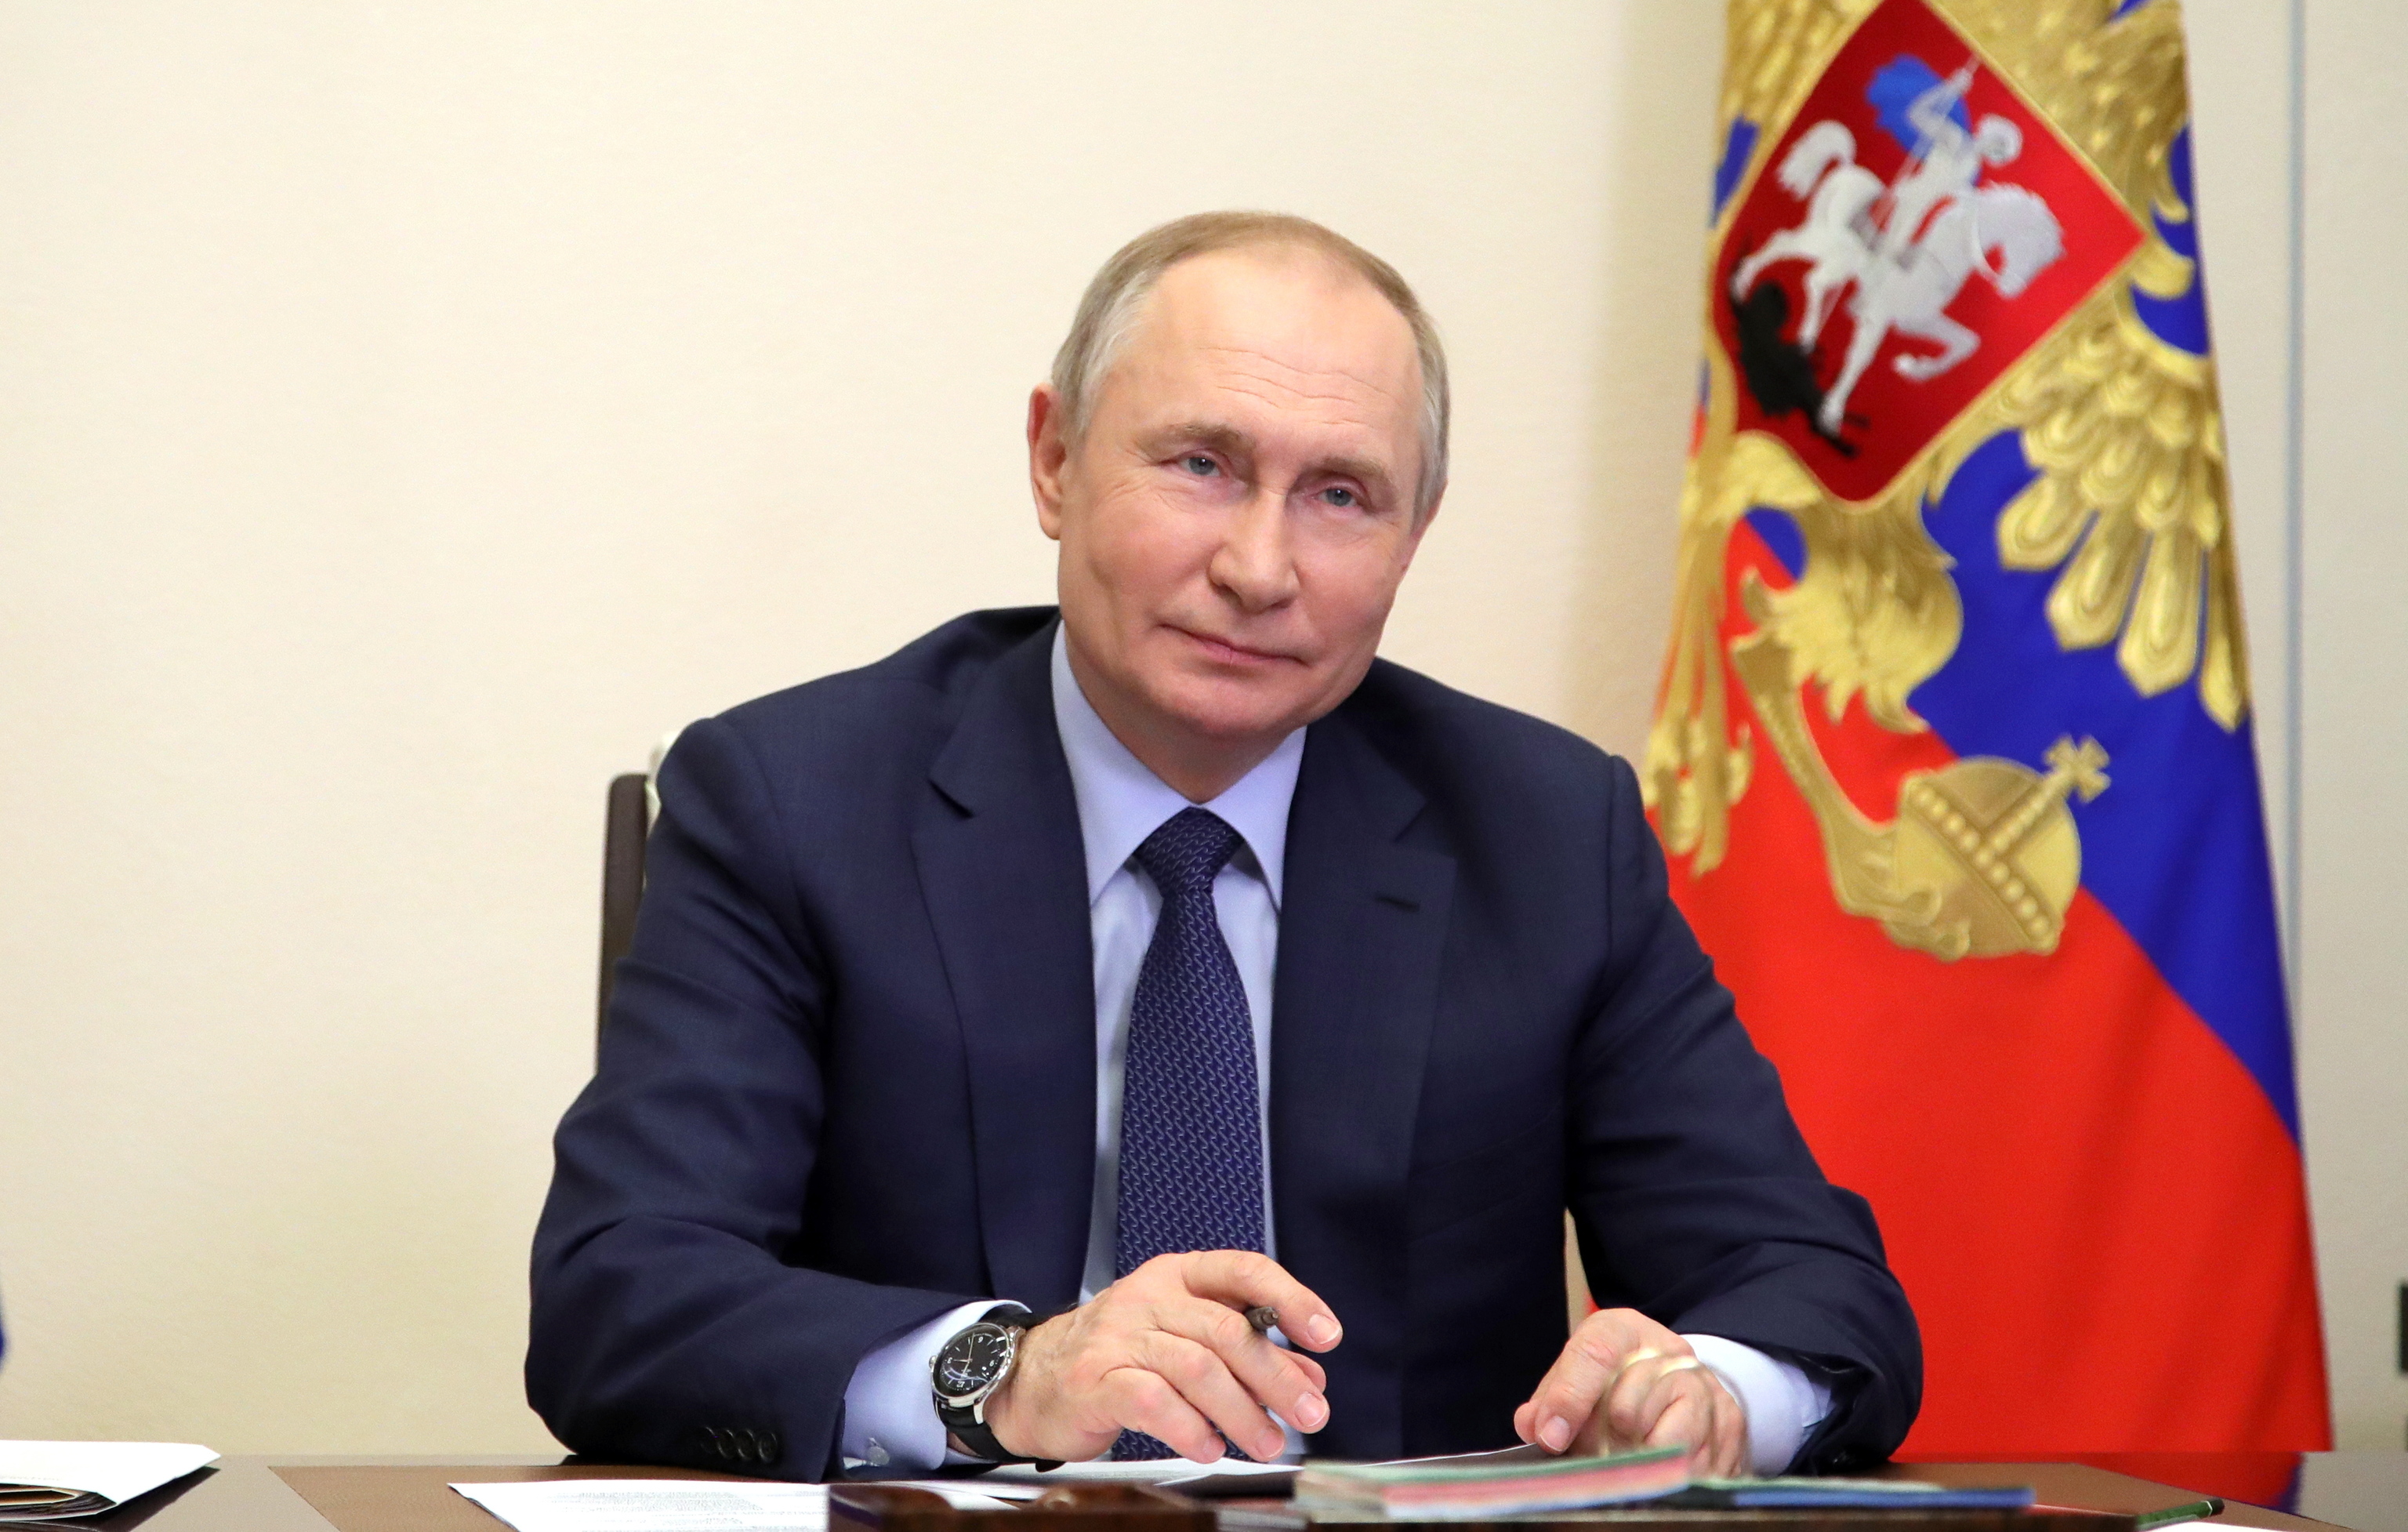 Putin quiere que Occidente le ayude a combatir las sanciones